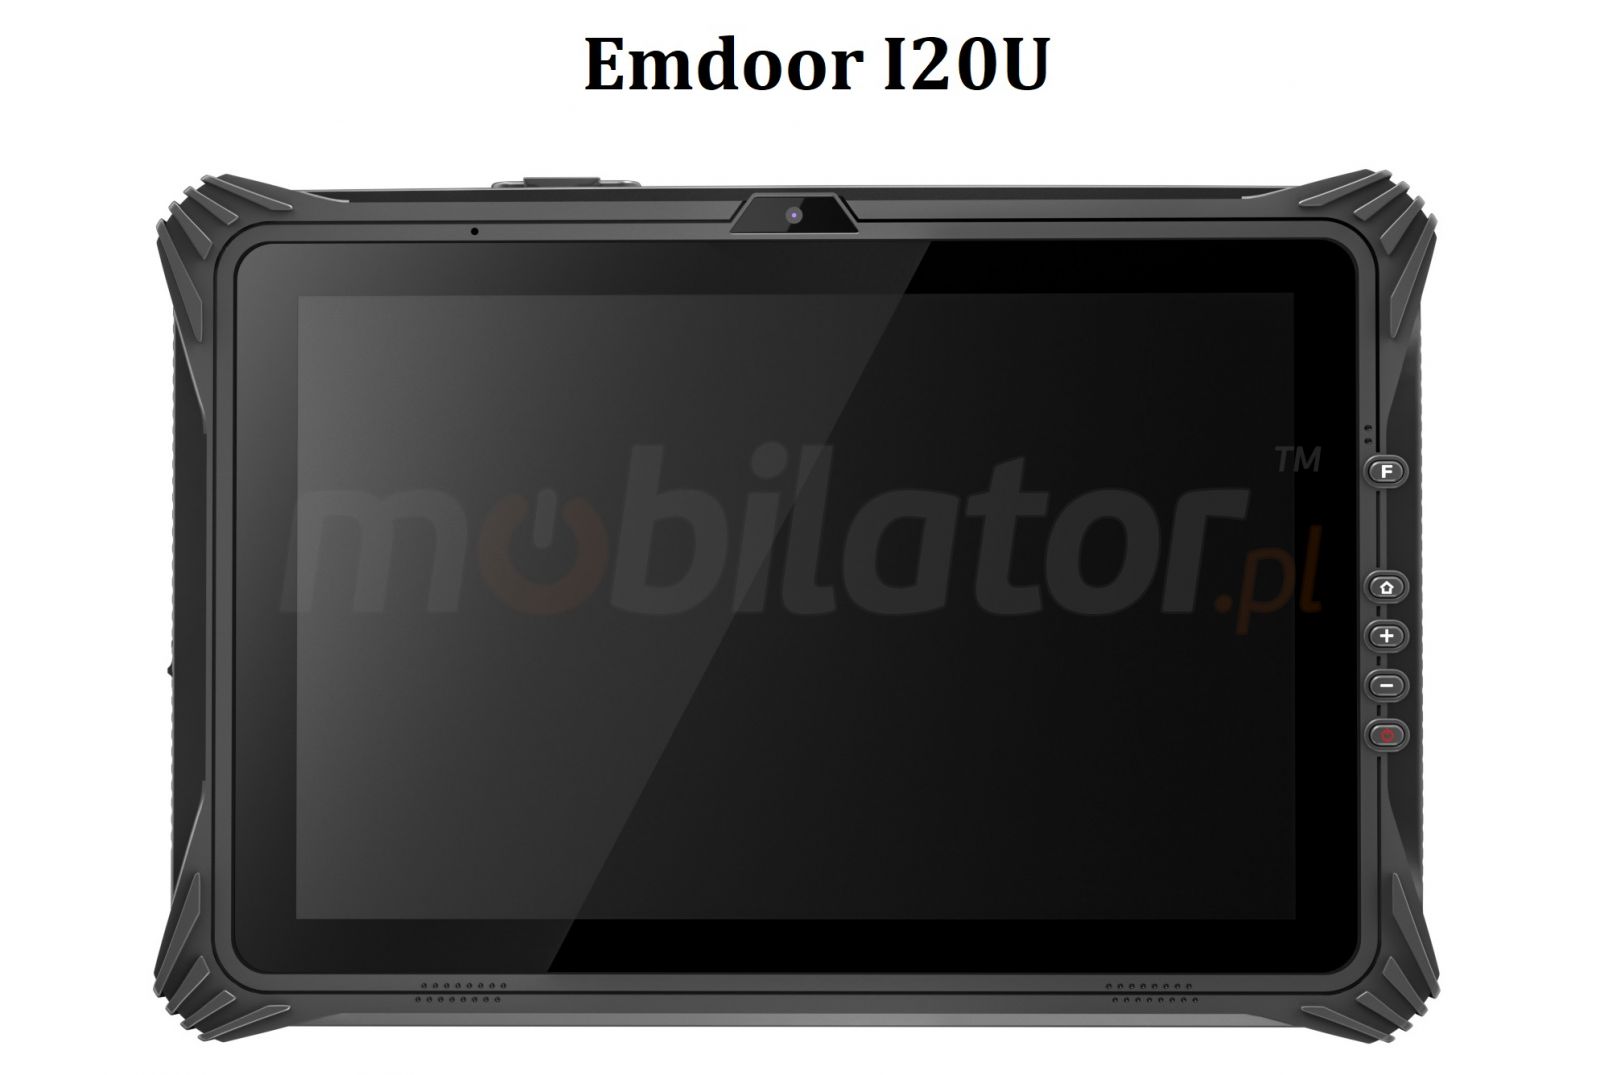 Emdoor I20U v.3 - Wodoodporny i wstrzsoodporny tablet z czytnikiem kodw 1D MOTO SE655, NFC oraz 4G, 8GB RAM i 128GB ROM